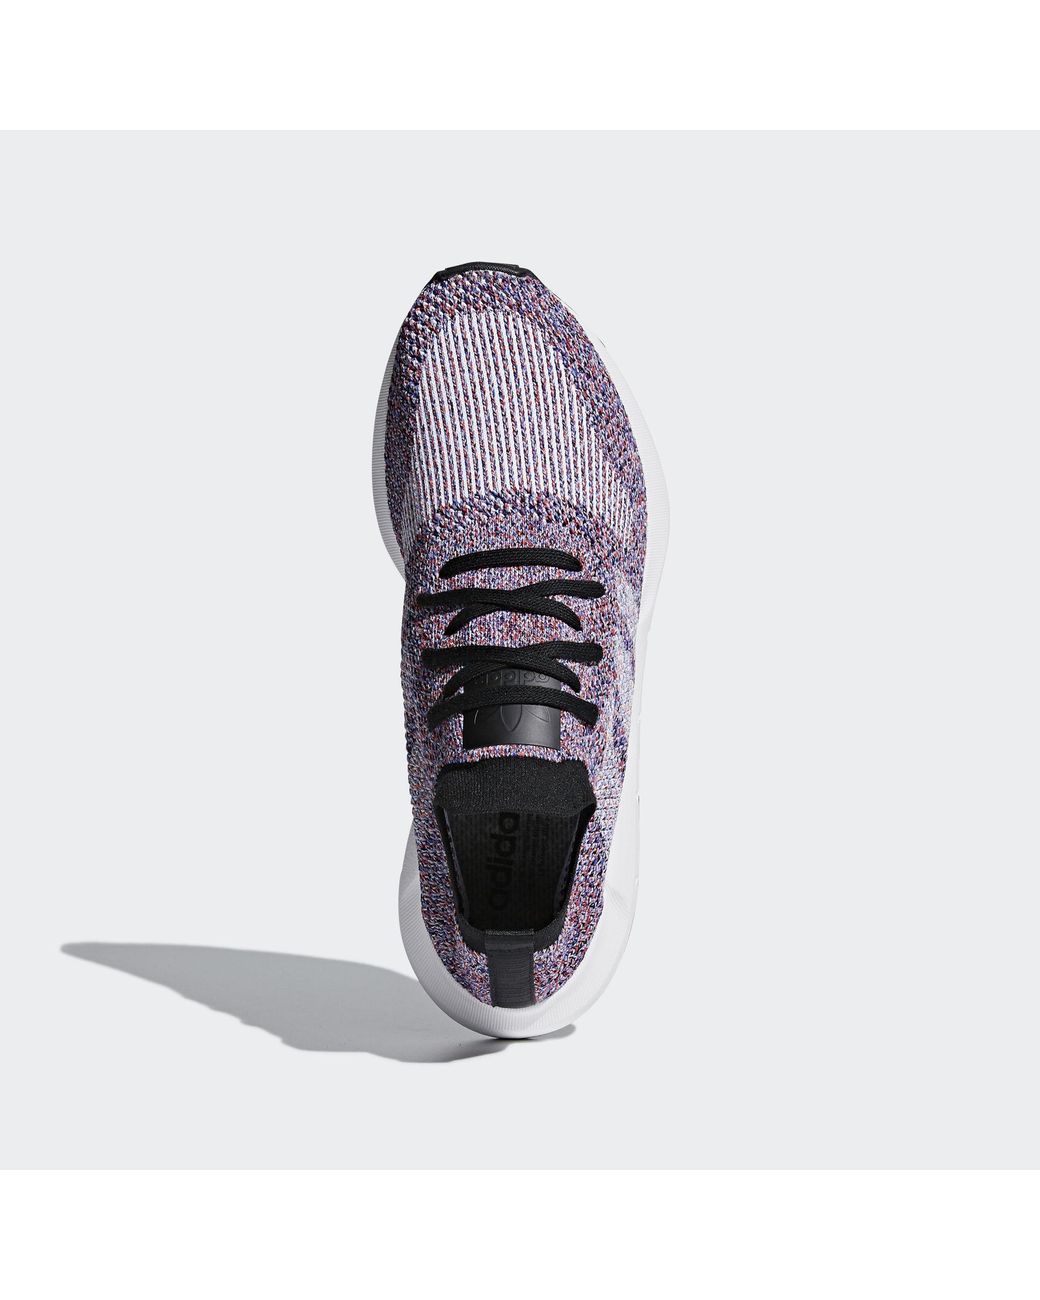 Adidas Originals Swift Run Primeknit Shoes D(M) US Hi-res Red Road Running  | wholesaledoorparts.com